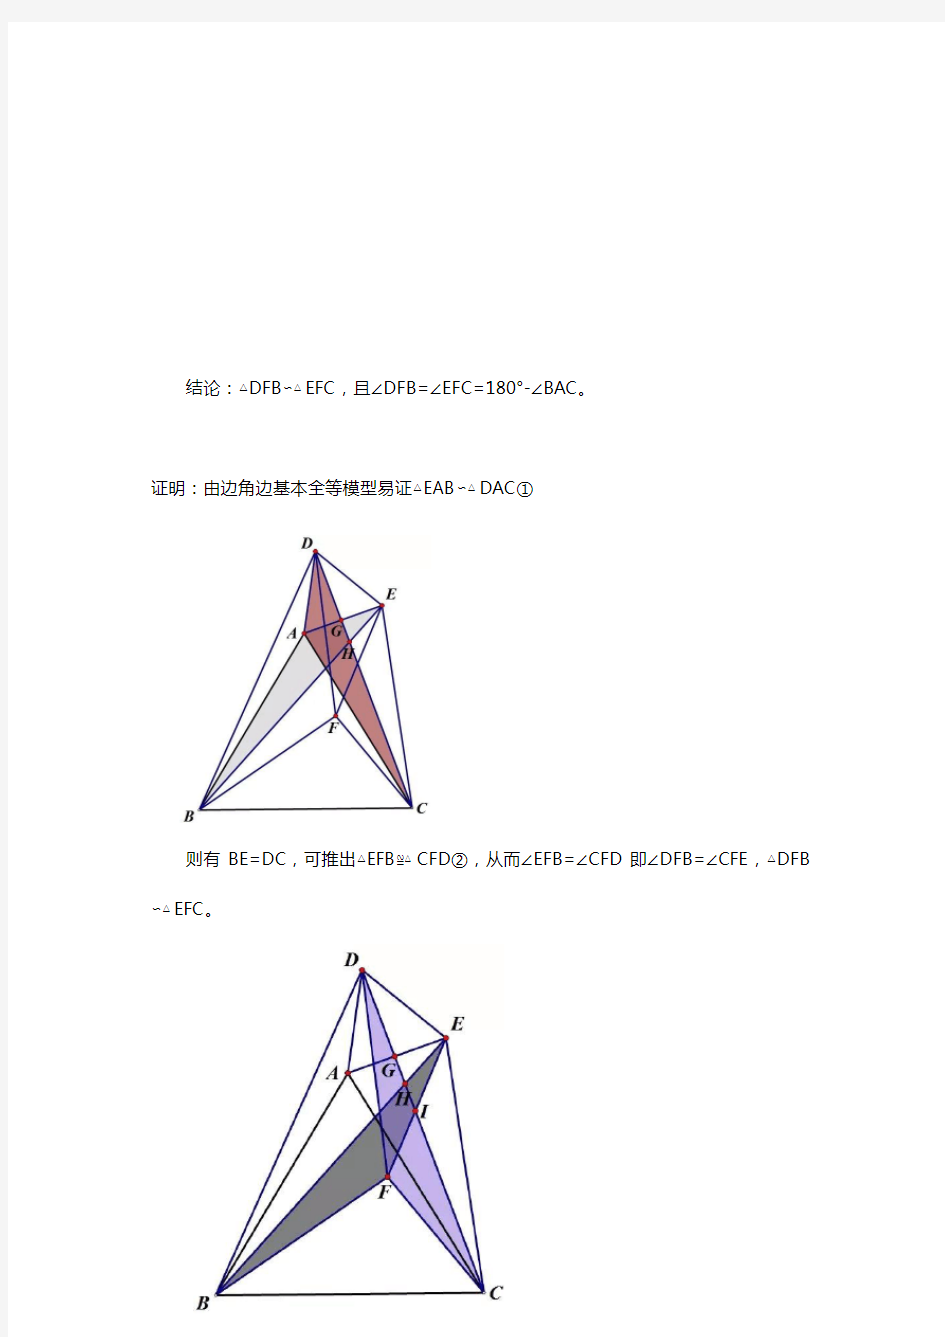 共顶点等腰三角形产生相似三角形模型